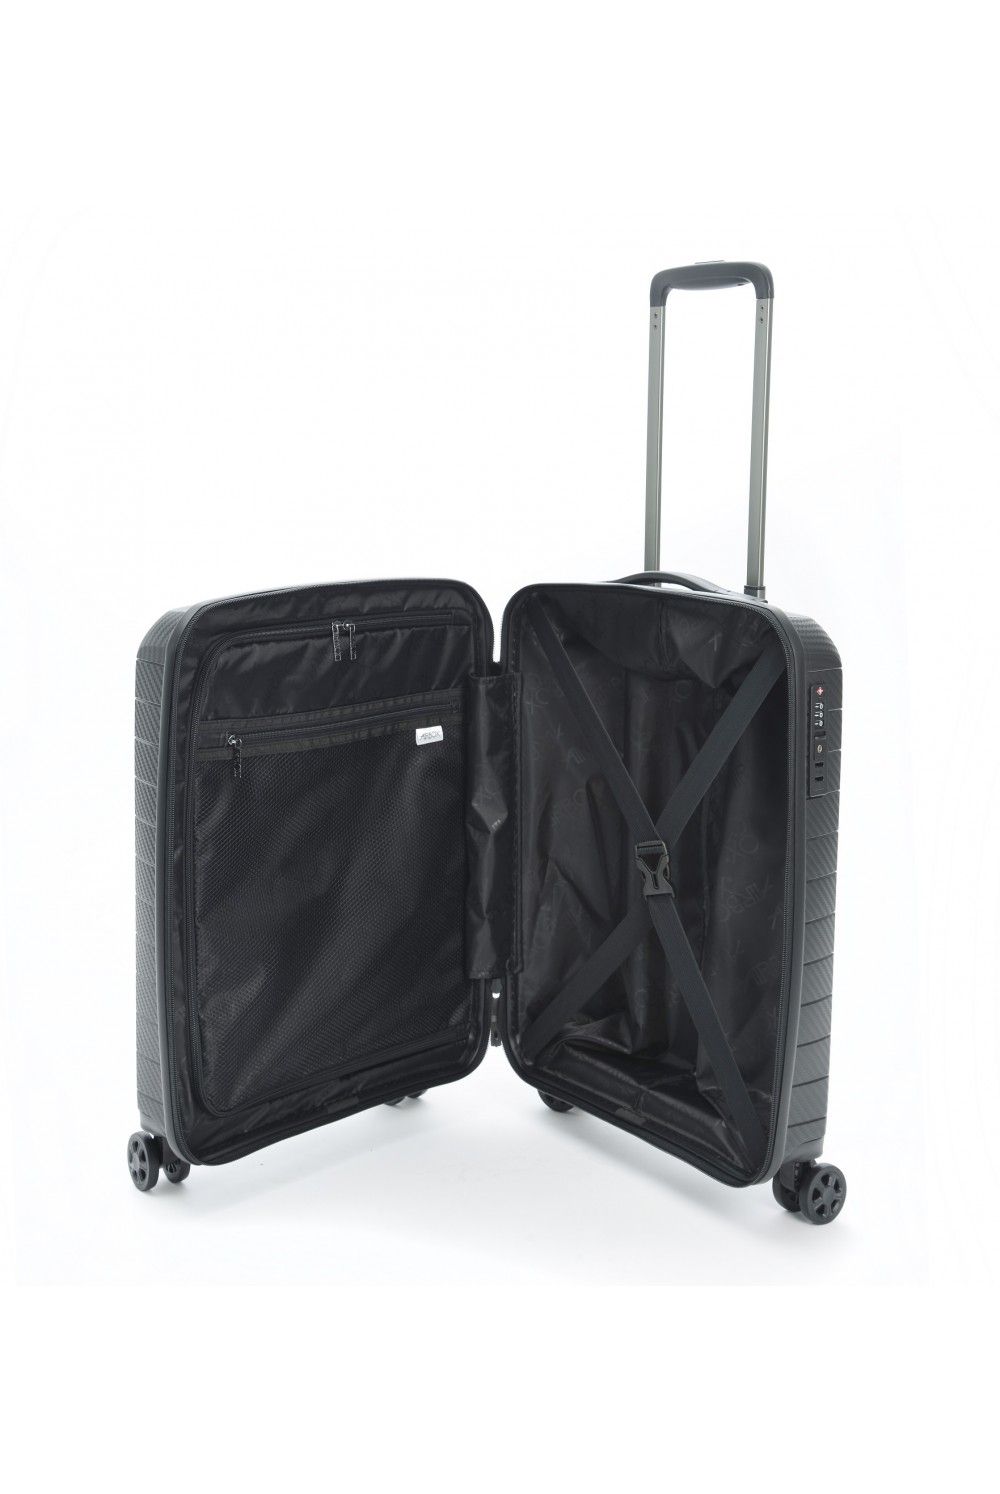 Handgepäck Koffer AIRBOX AZ18 55cm 4 Rad schwarz